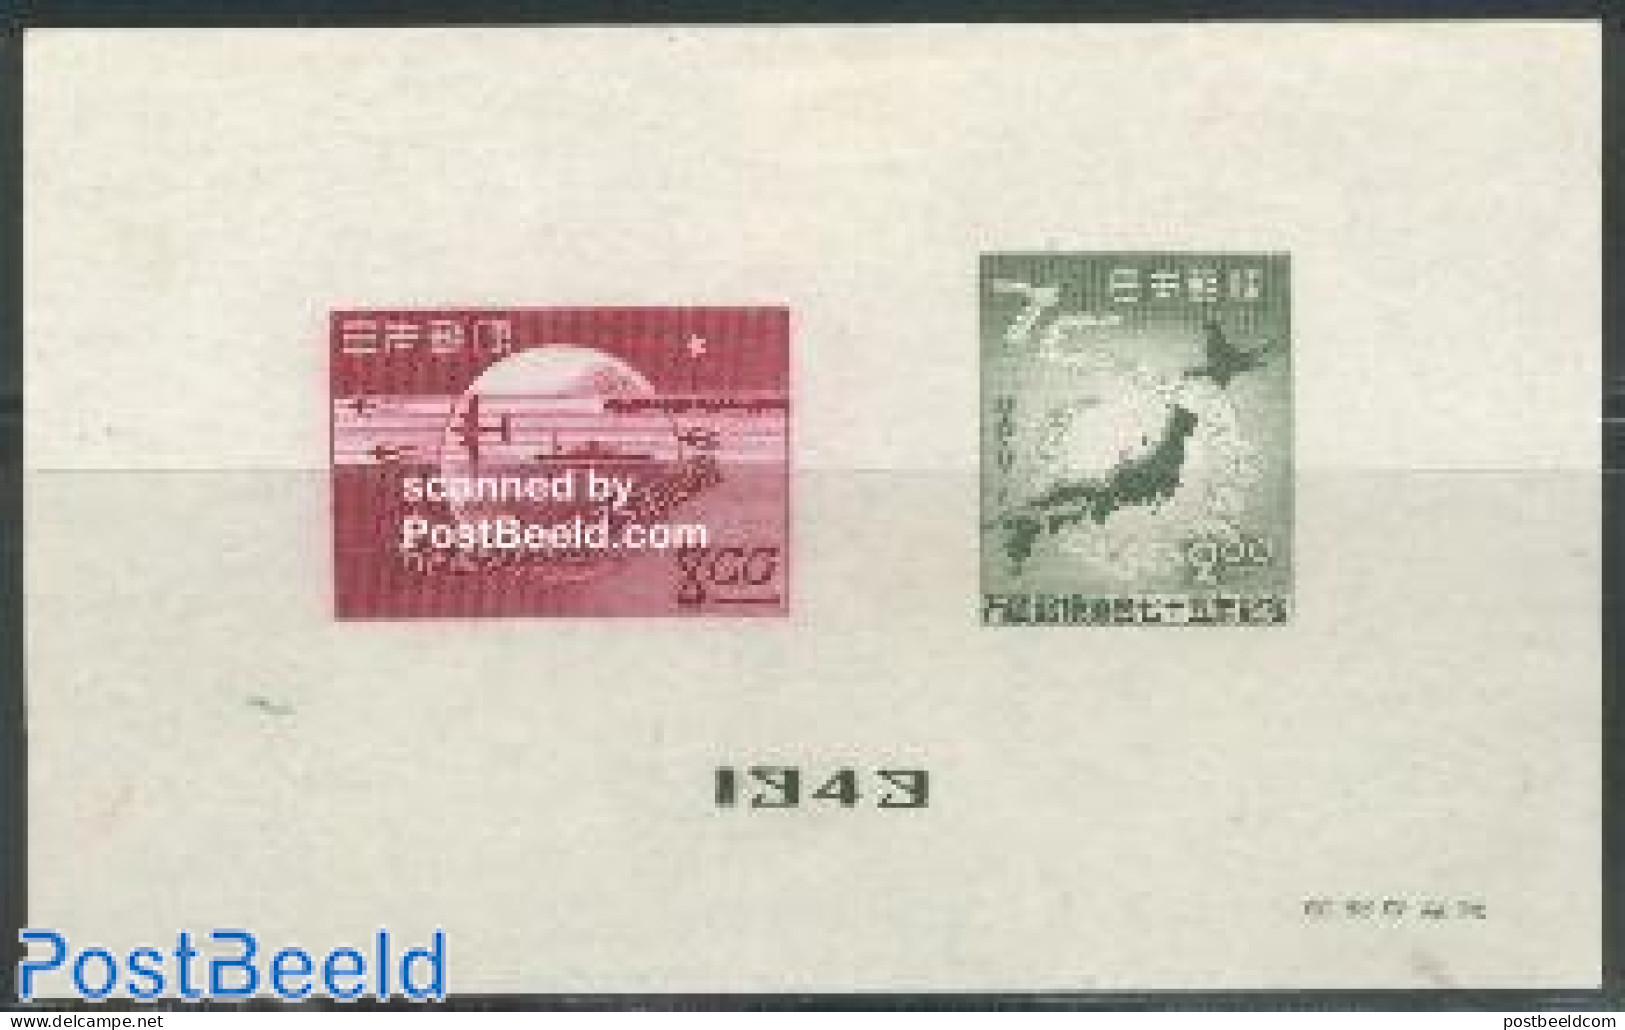 Japan 1949 75 Years UPU S/s (issued Without Gum), Unused (hinged), U.P.U. - Ongebruikt